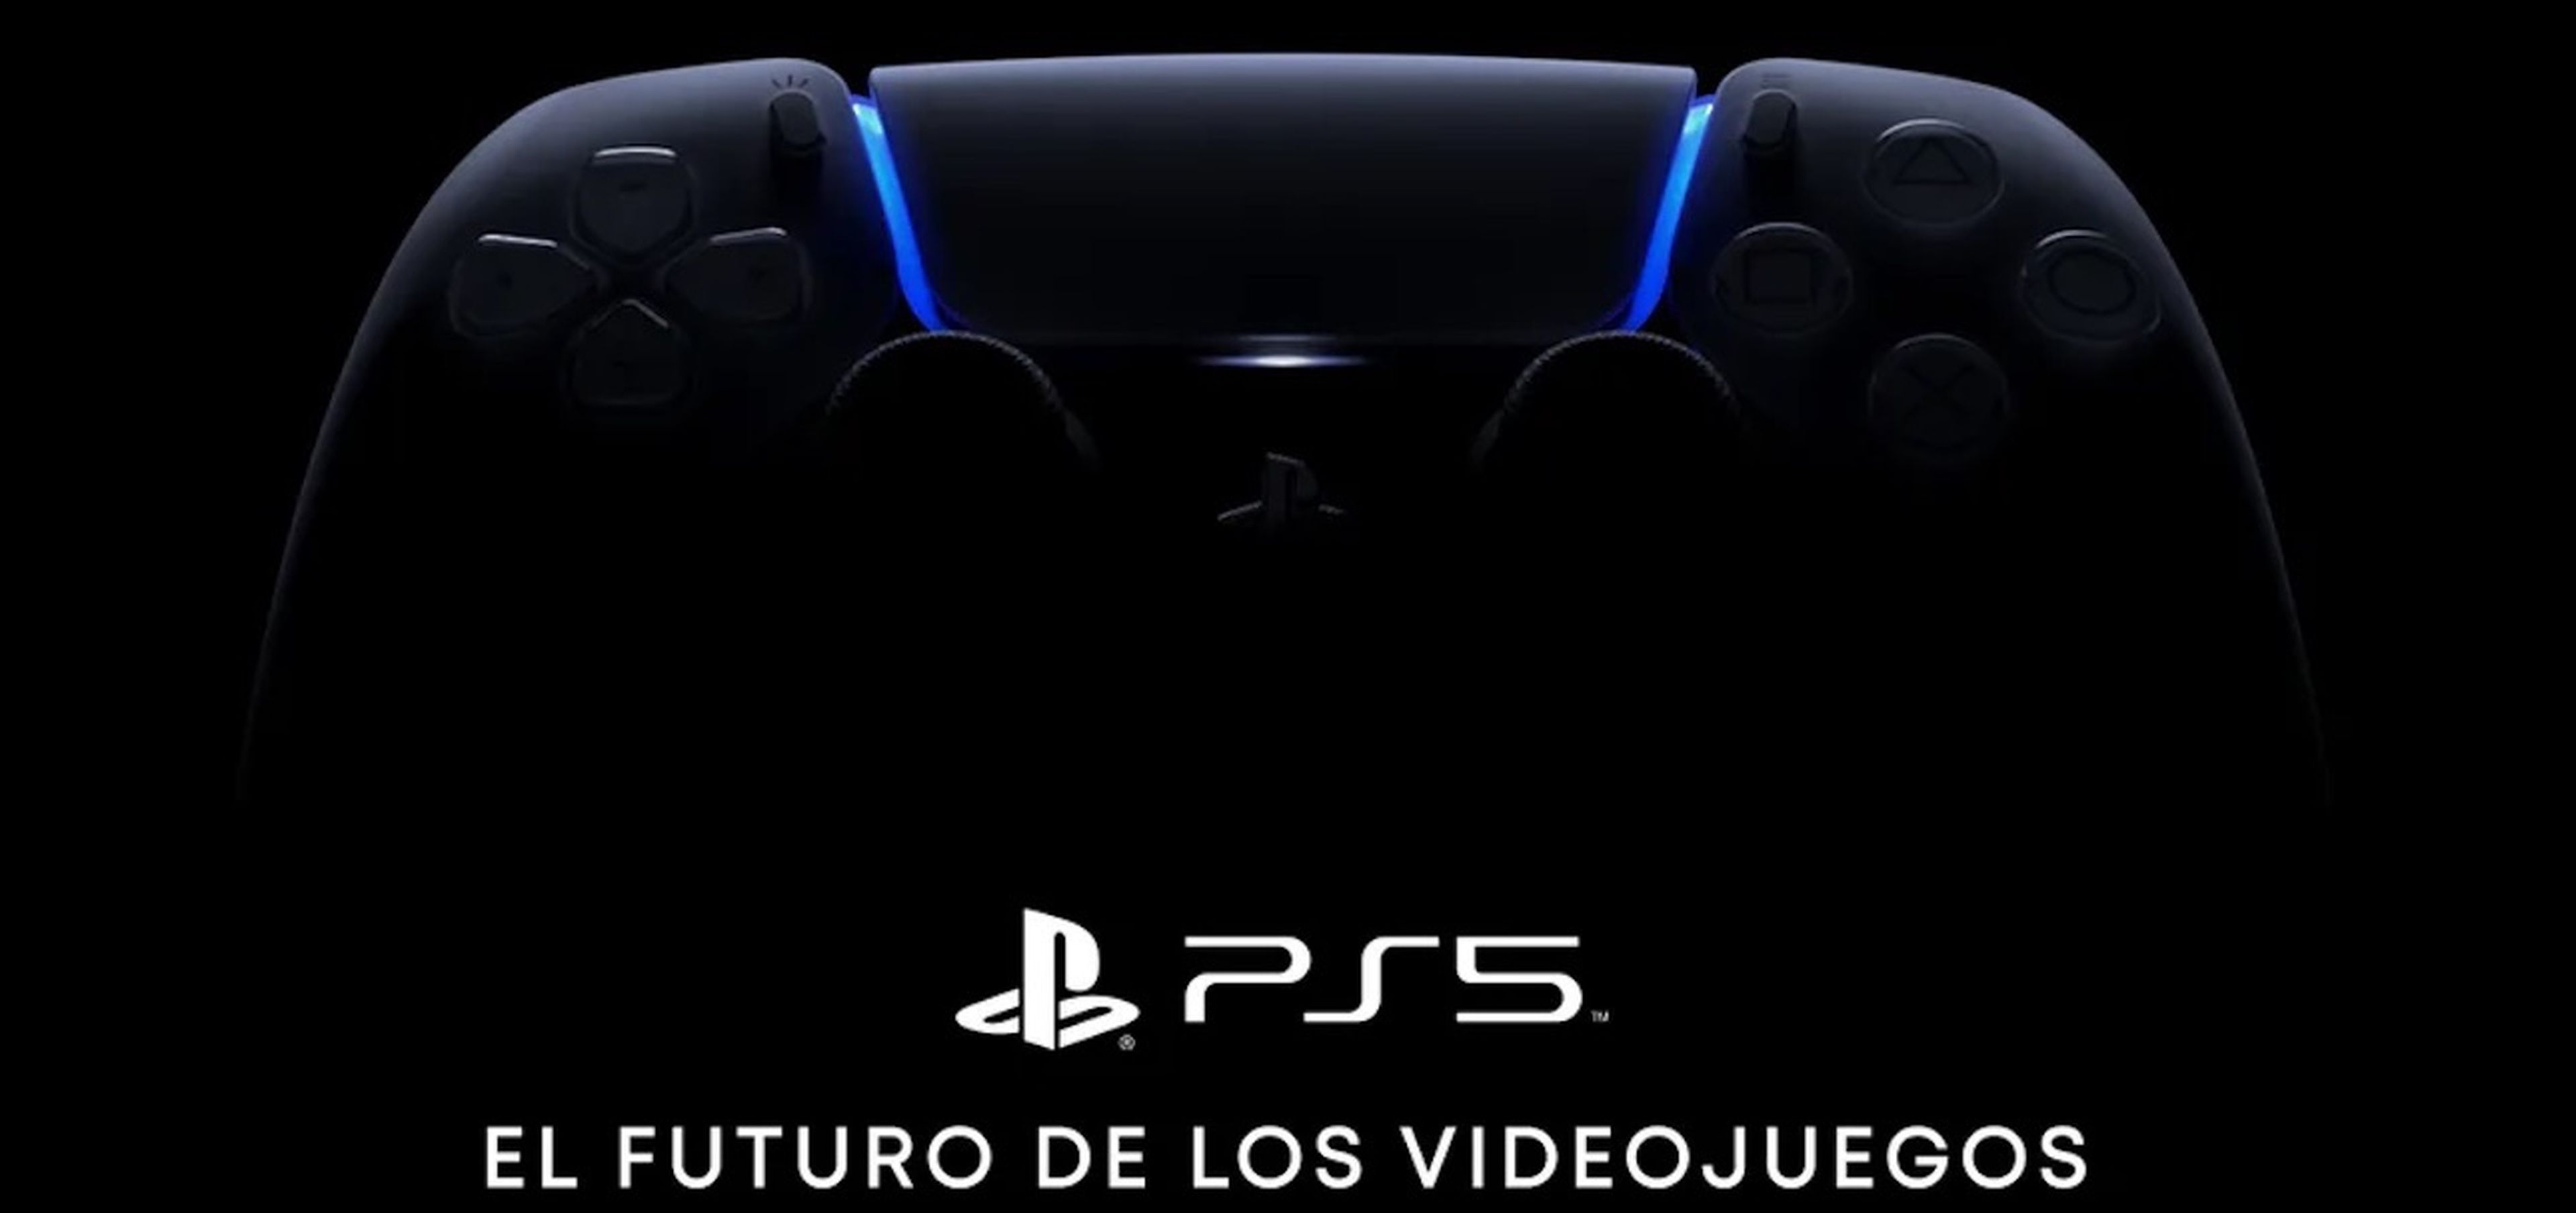 PS5 El futuro de los videojuegos